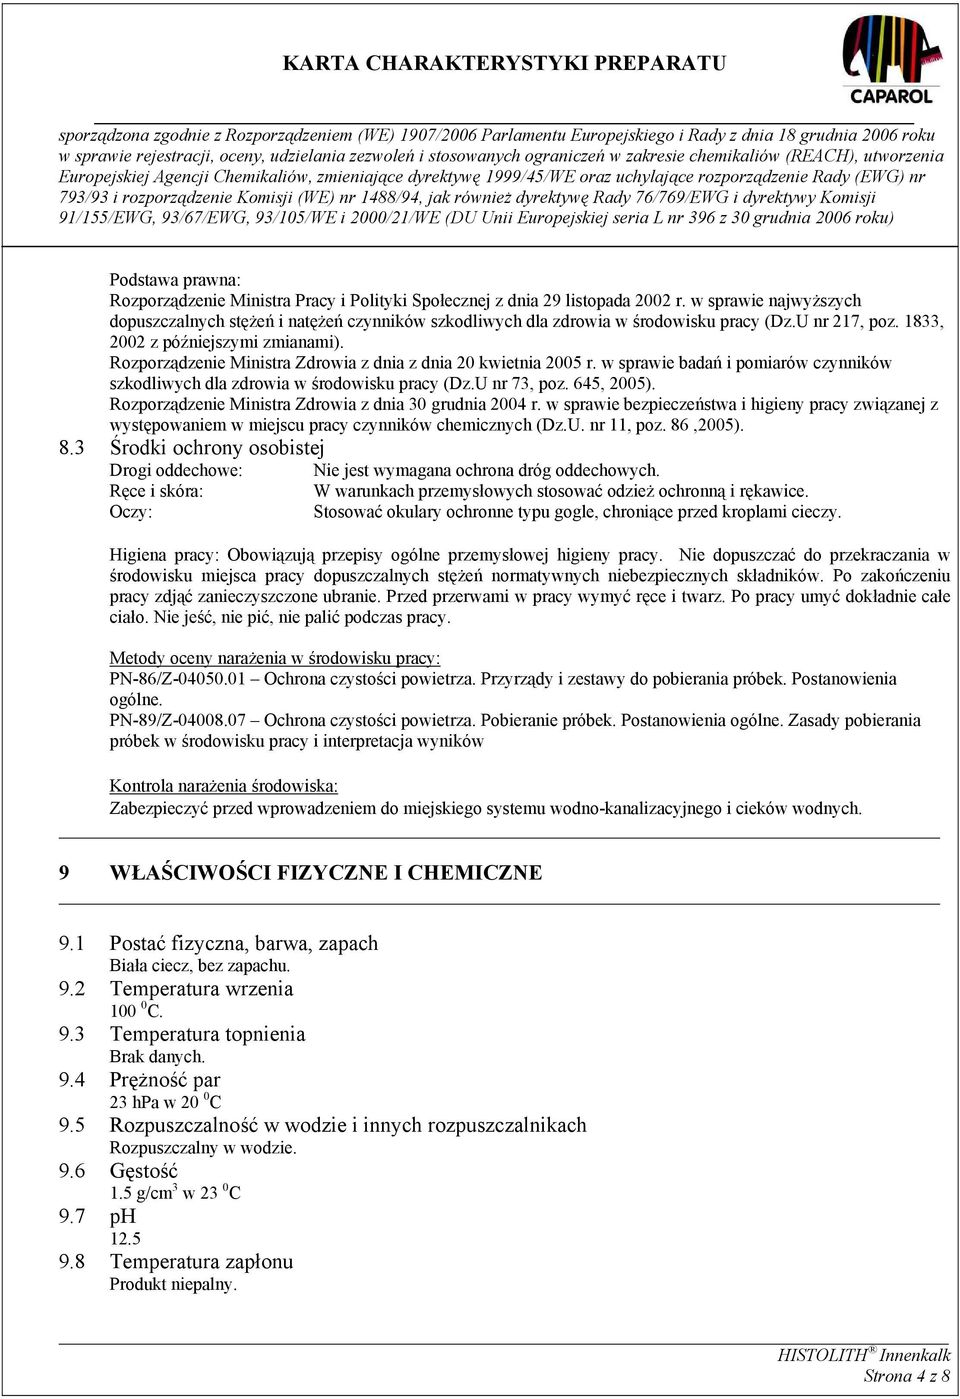 Rozporządzenie Ministra Zdrowia z dnia z dnia 20 kwietnia 2005 r. w sprawie badań i pomiarów czynników szkodliwych dla zdrowia w środowisku pracy (Dz.U nr 73, poz. 645, 2005).